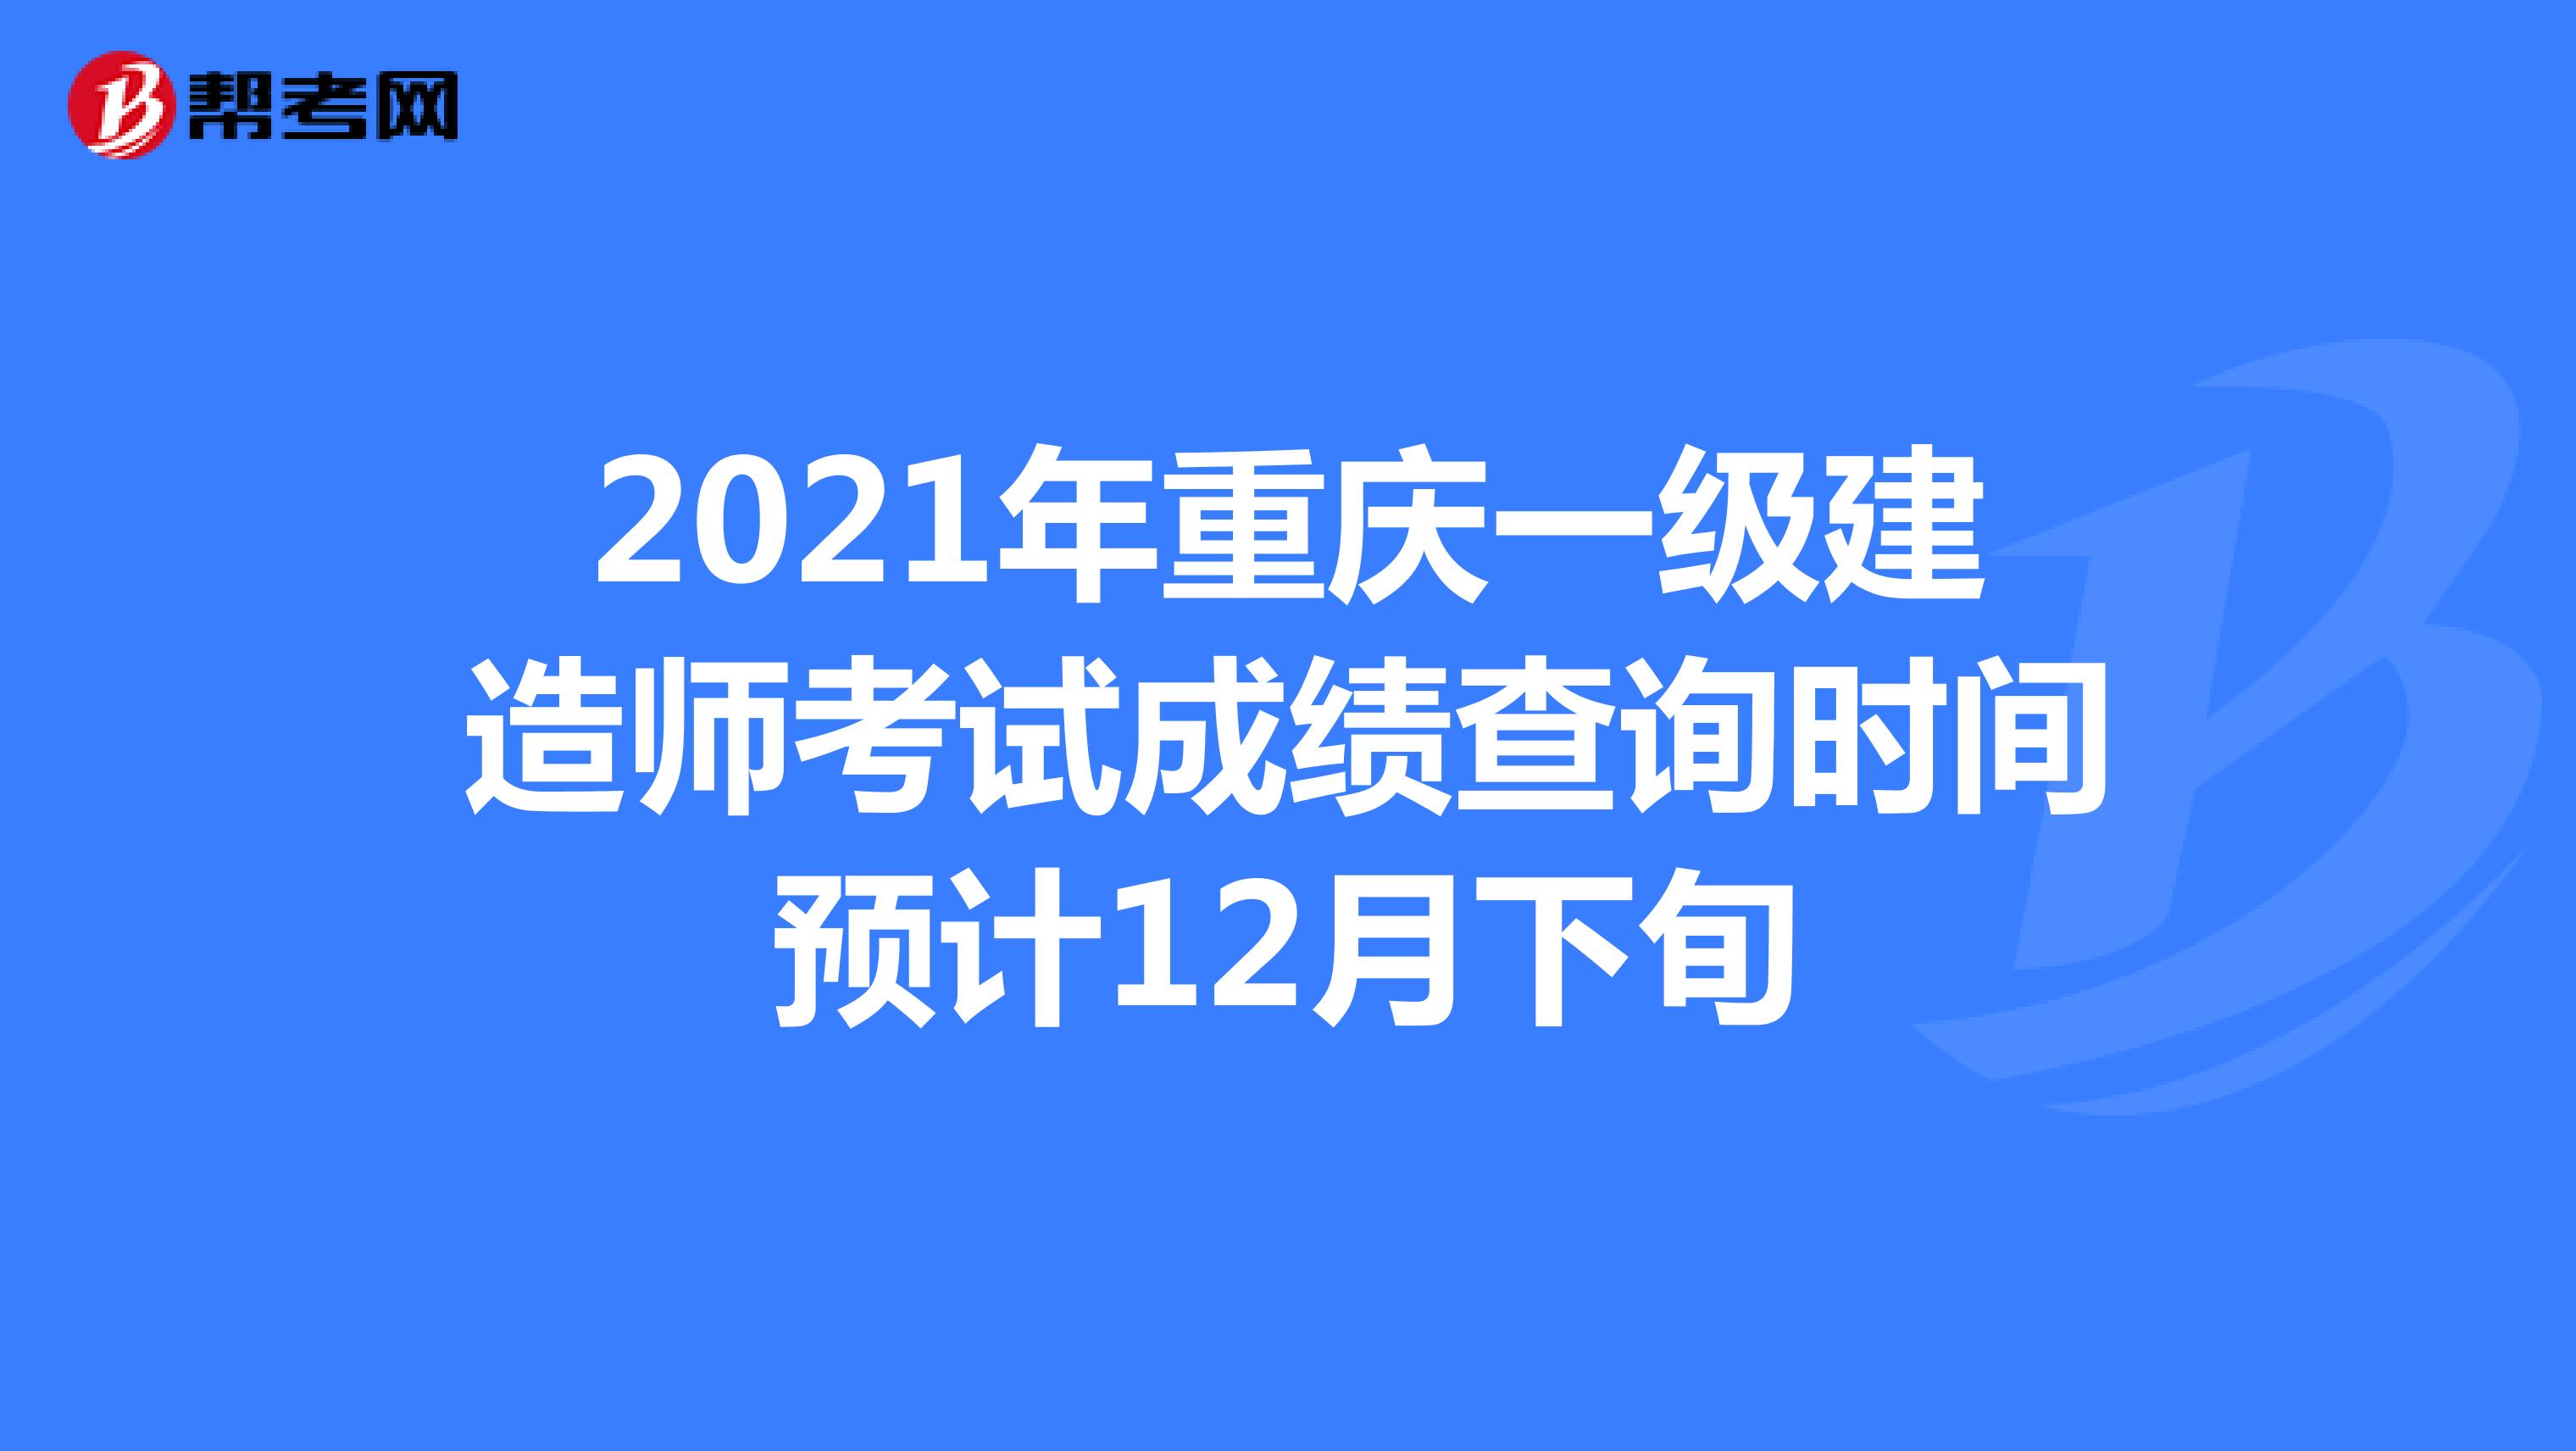 2021年重庆一级建造师考试成绩查询时间预计12月下旬